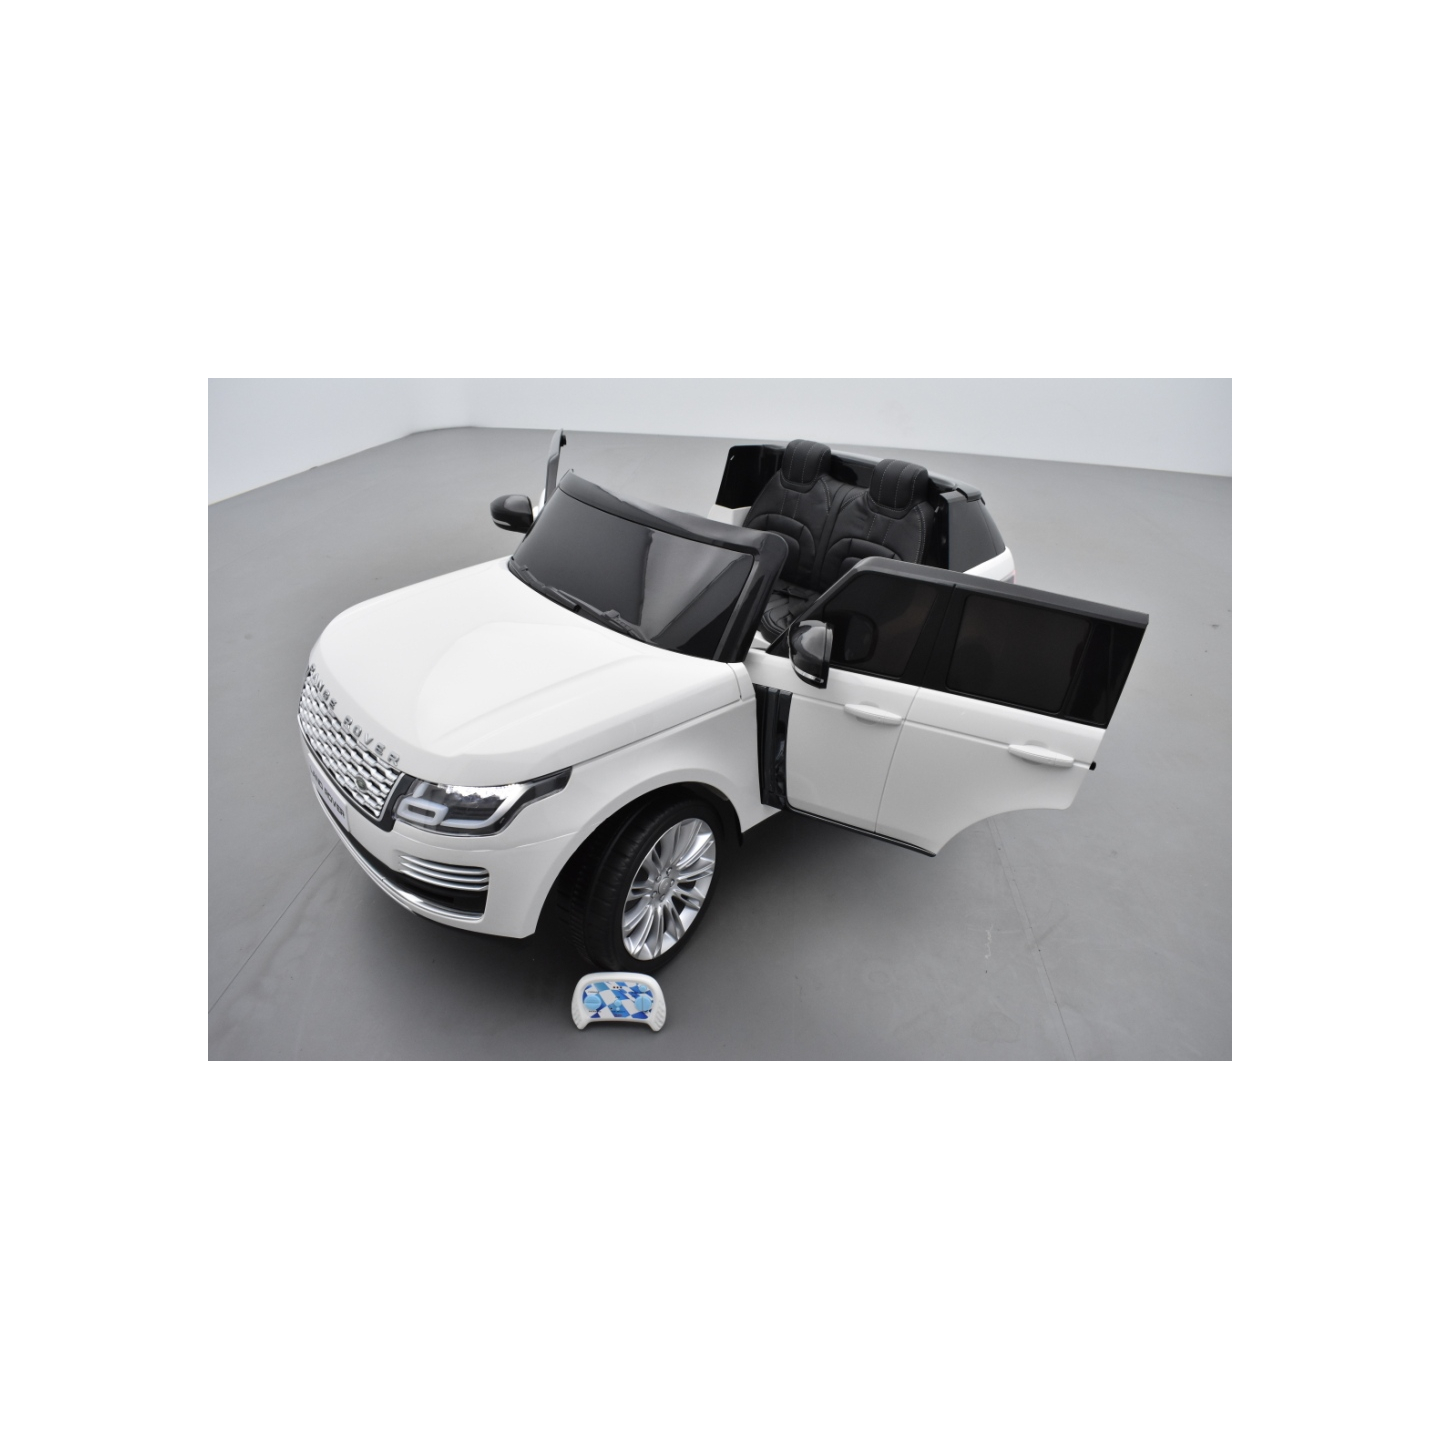 Range Rover, Finition Autobiography HSE, Blanc, 2 Places, voiture électrique enfant télécommande parentale, 24 Volts